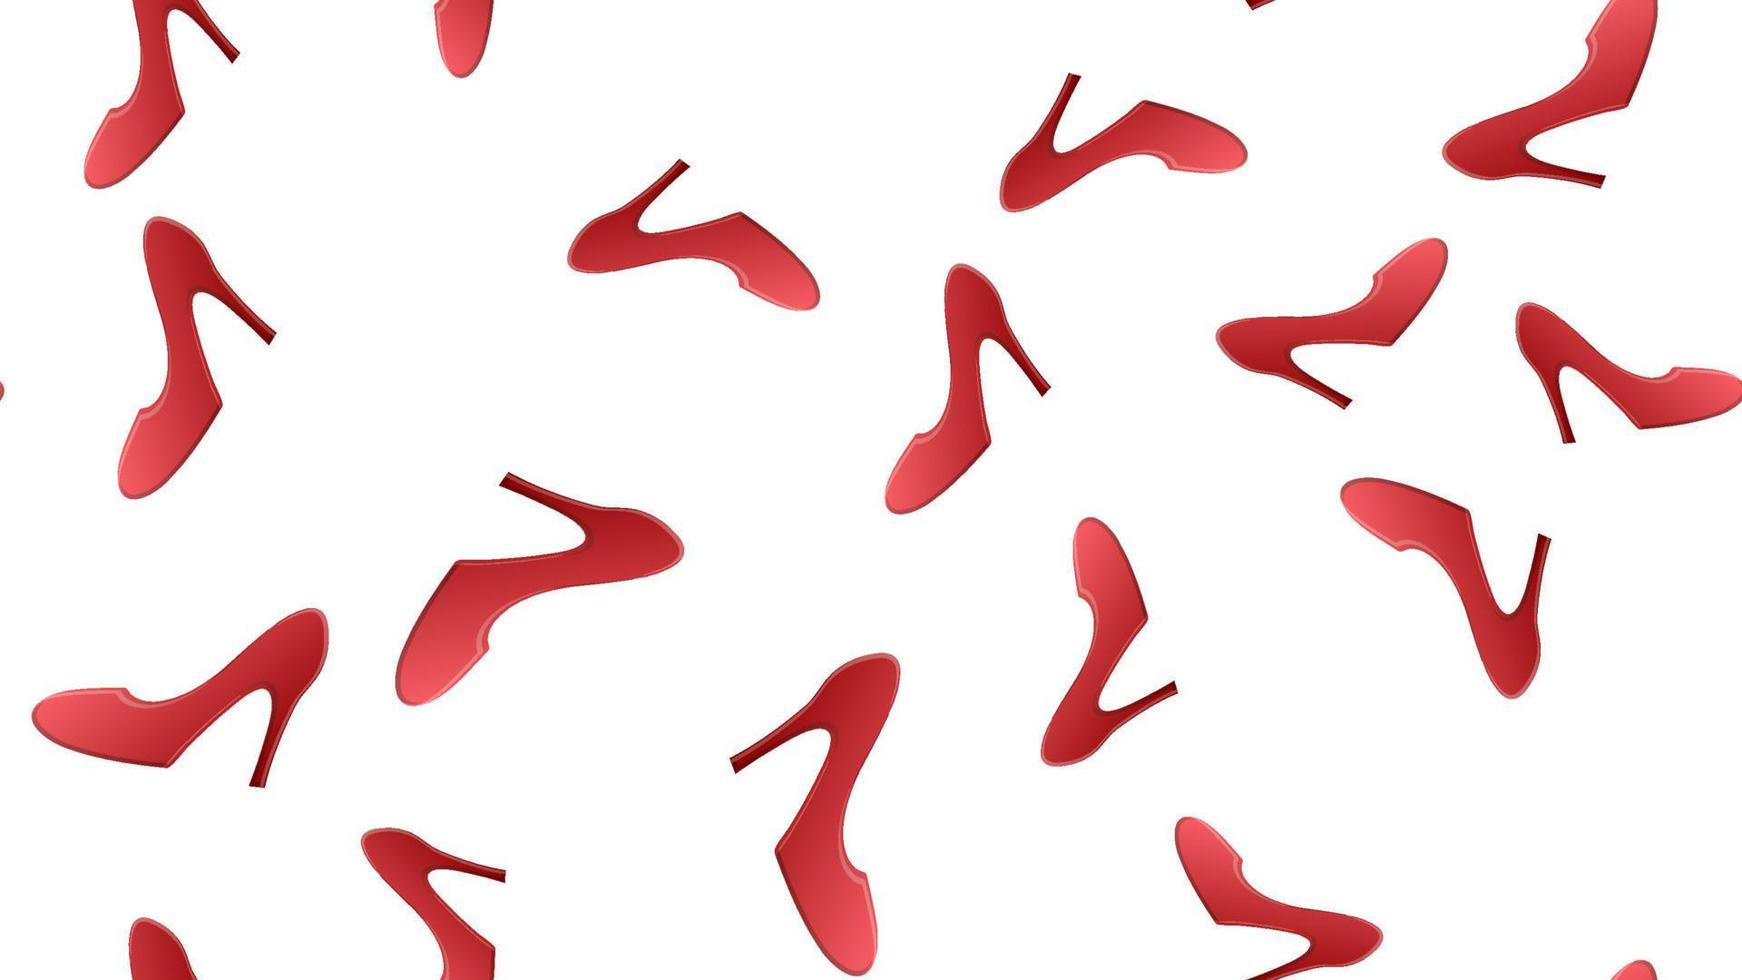 zapatos rojos de tacón alto de mujer 3d detallados y realistas fondo de patrón sin costuras en un concepto de estilo elegante blanco. ilustración vectorial de calzado femenino sexy vector